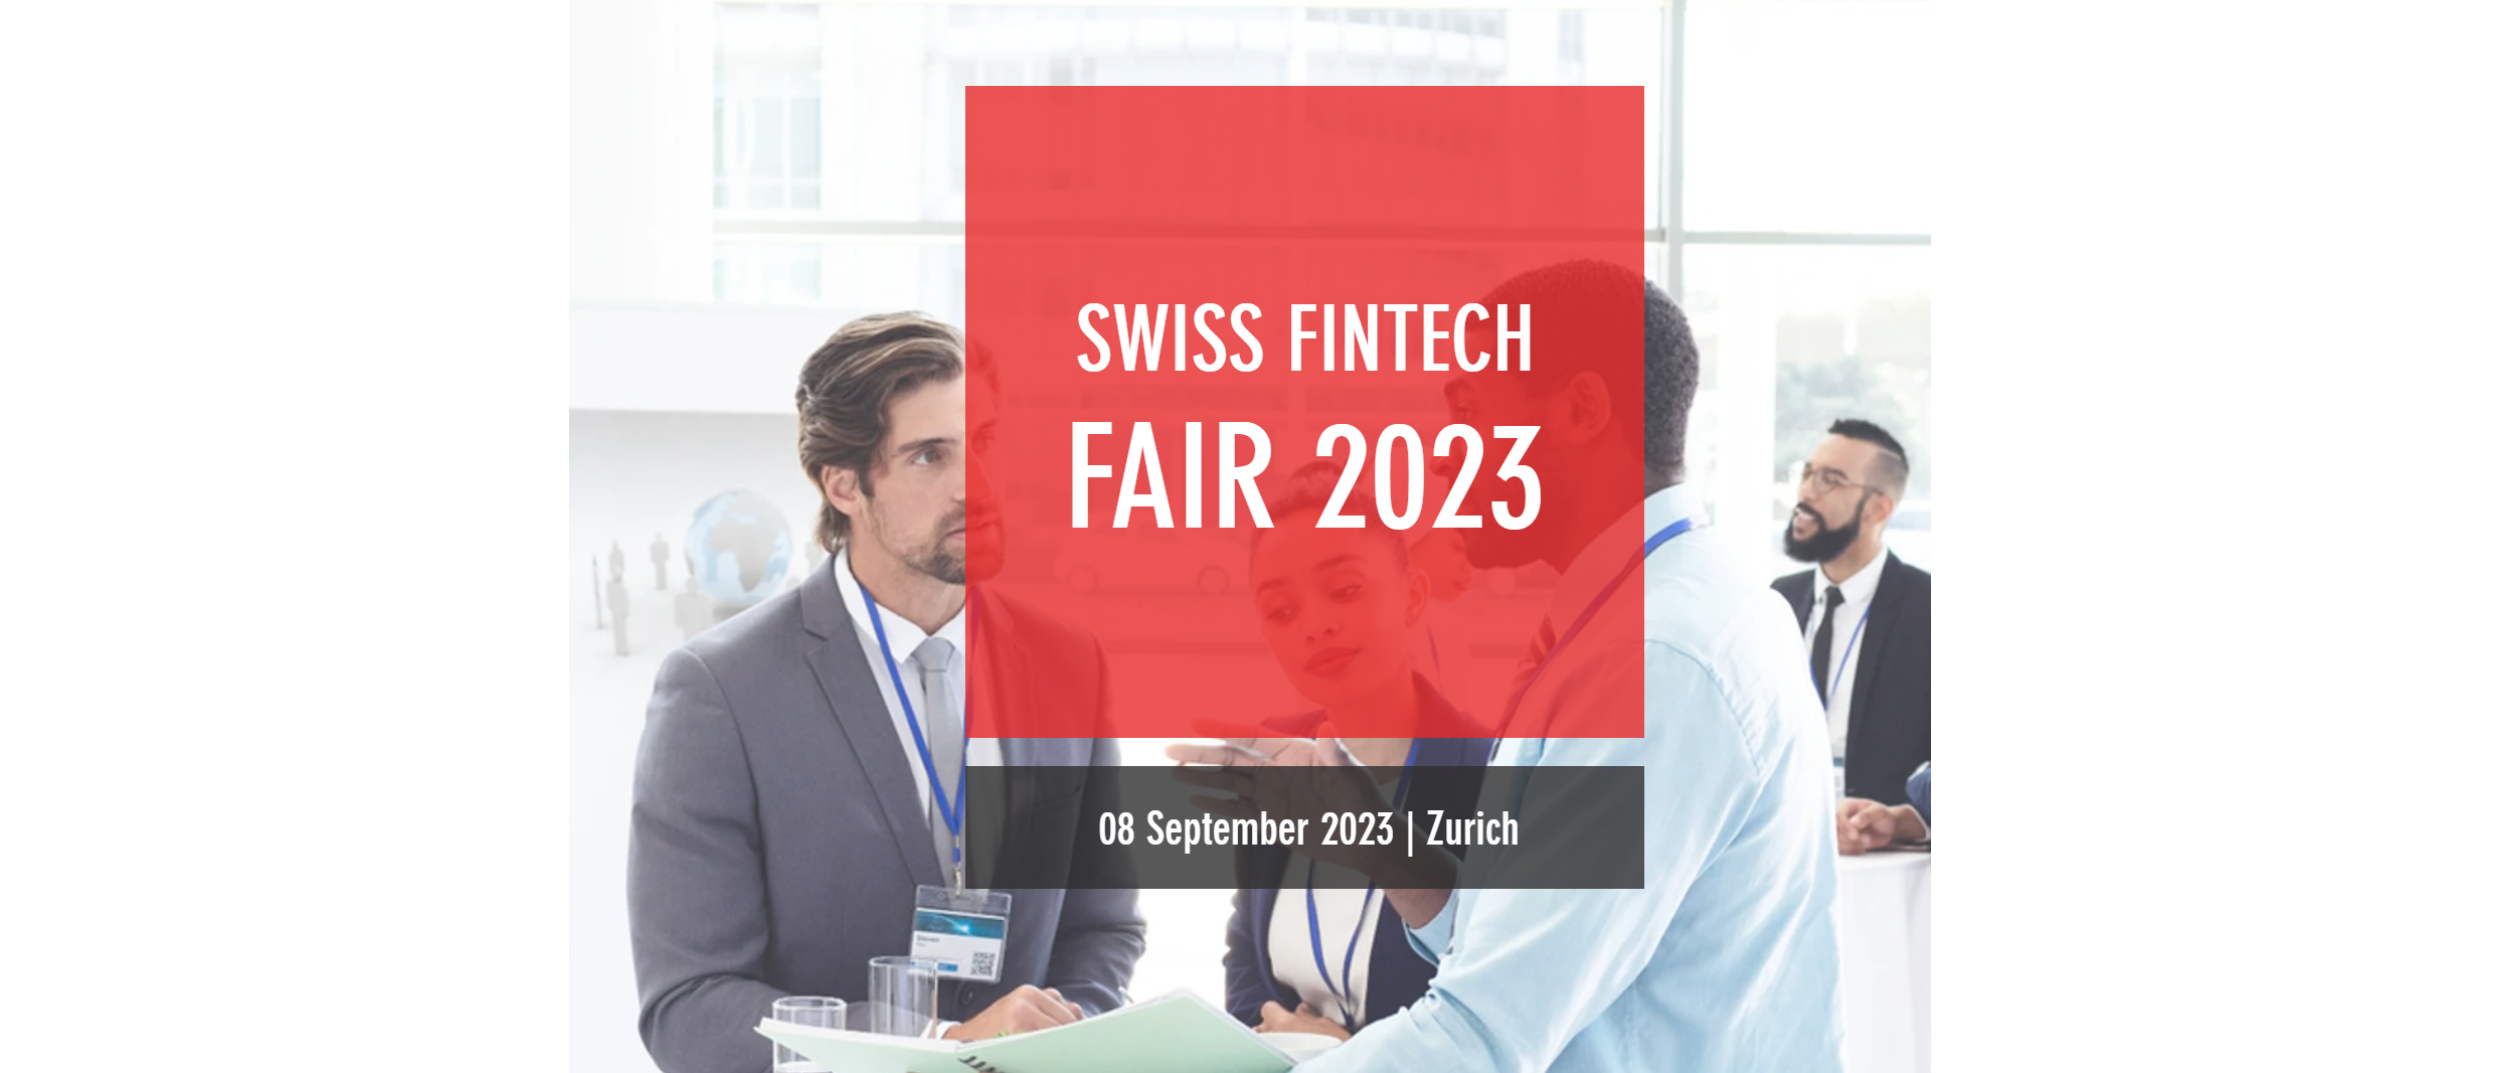 Swiss Fintech Fair 2023